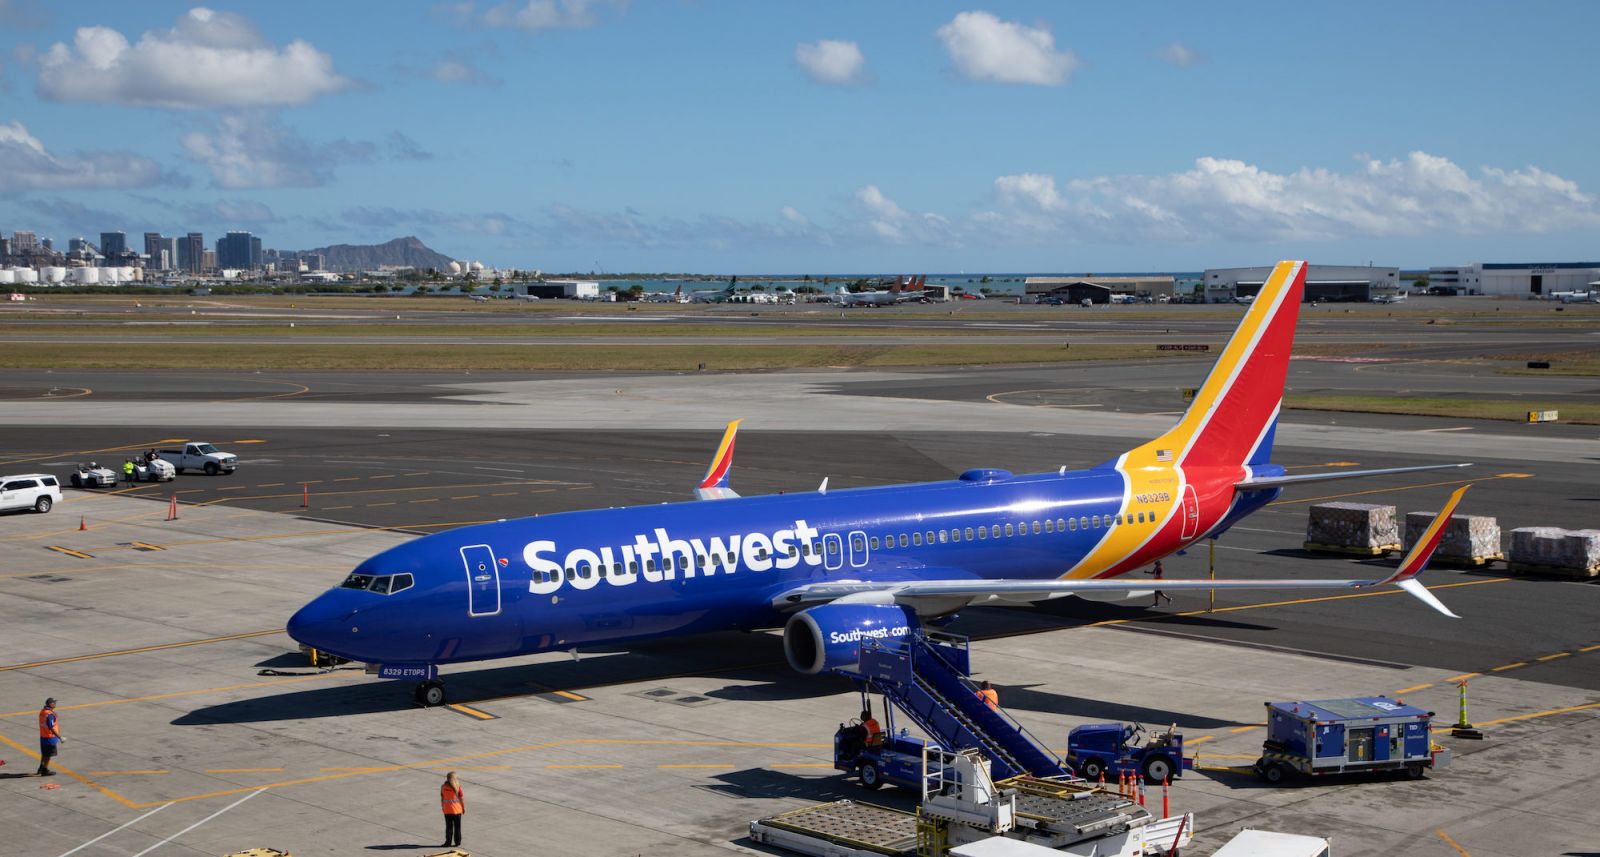 Finalmente! La Southwest Airlines inizia a vendere i biglietti per le isole Hawaii